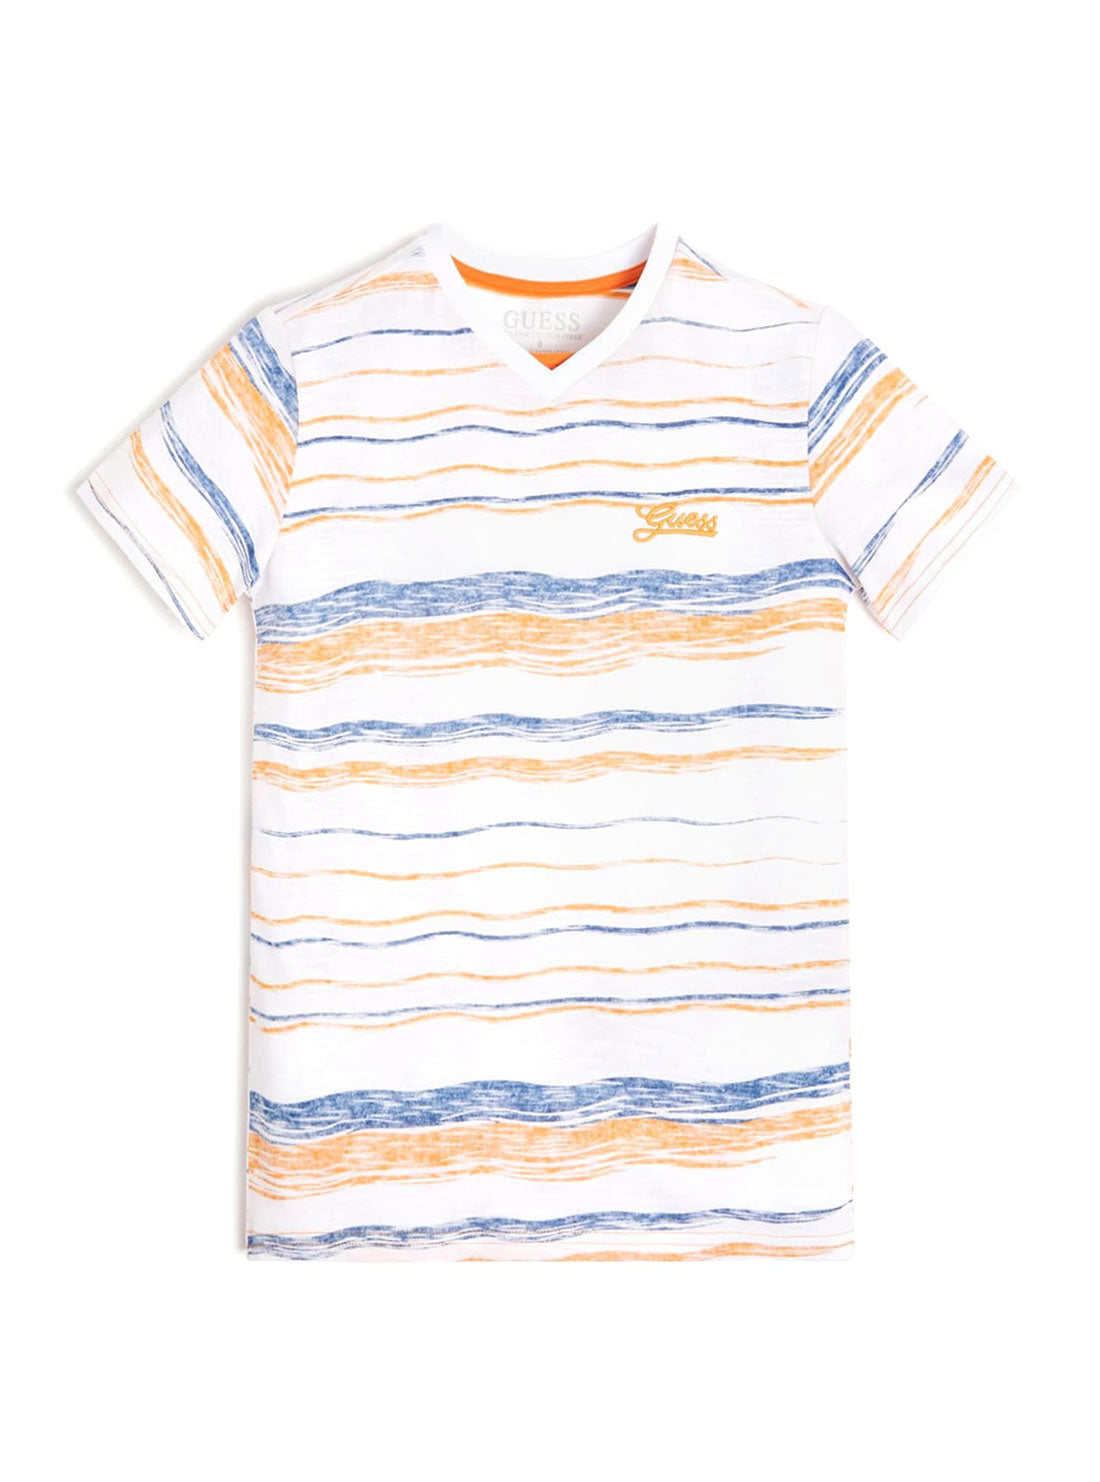 Boy's Eco Orange Stripe White V-neck T-Shirt front view